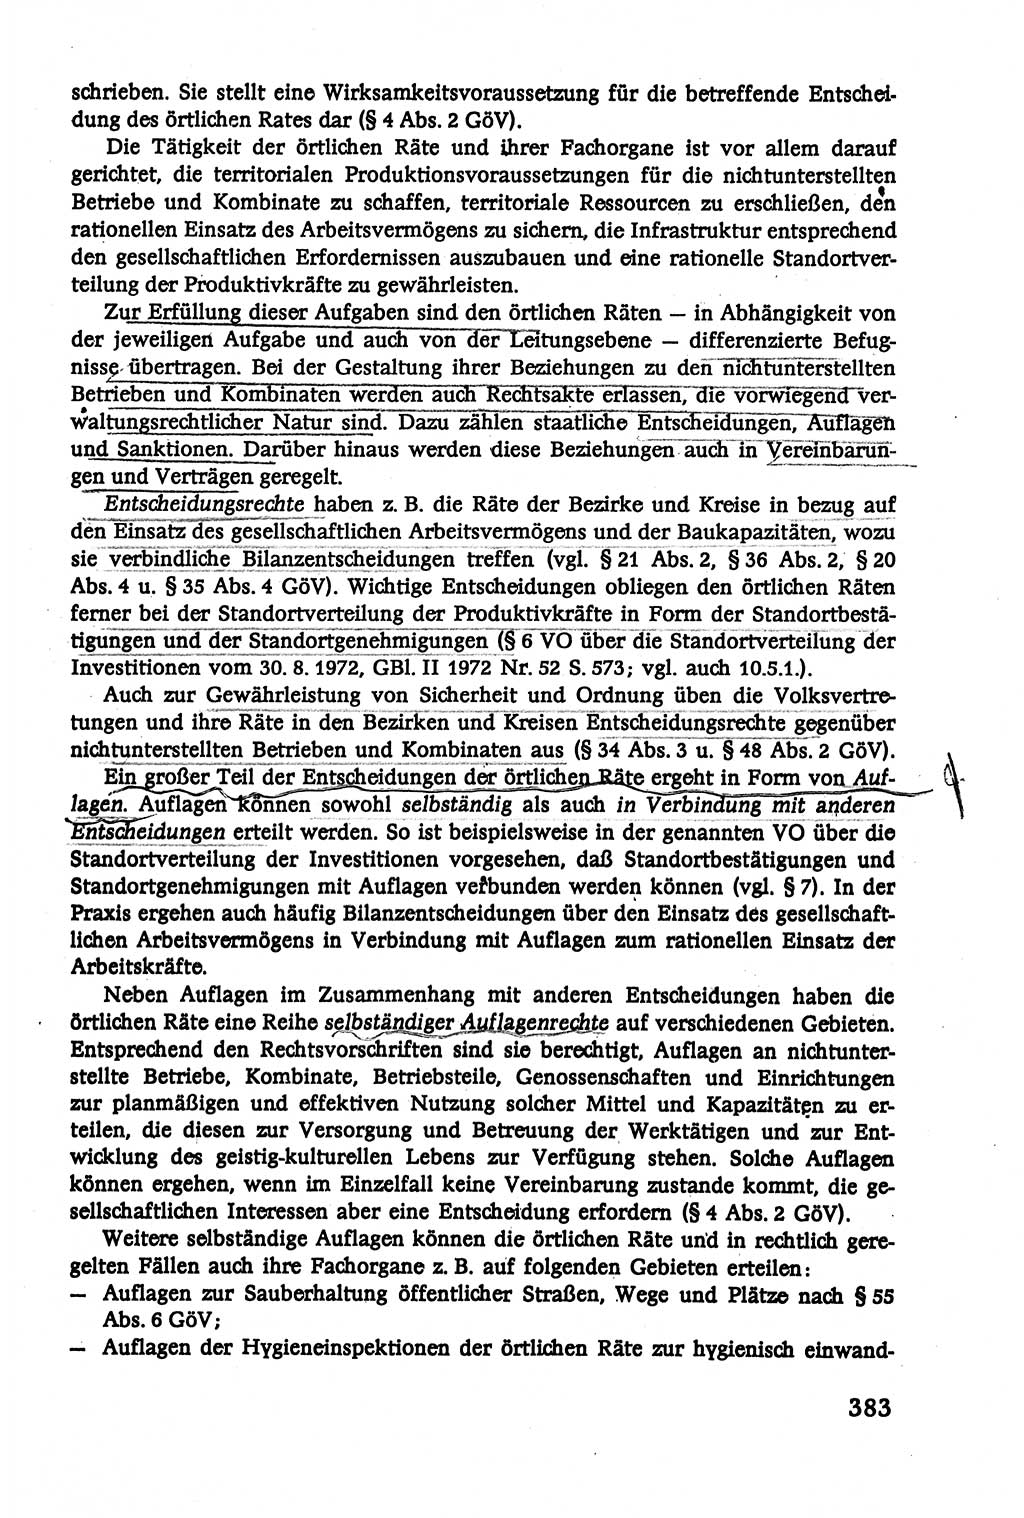 Verwaltungsrecht [Deutsche Demokratische Republik (DDR)], Lehrbuch 1979, Seite 383 (Verw.-R. DDR Lb. 1979, S. 383)